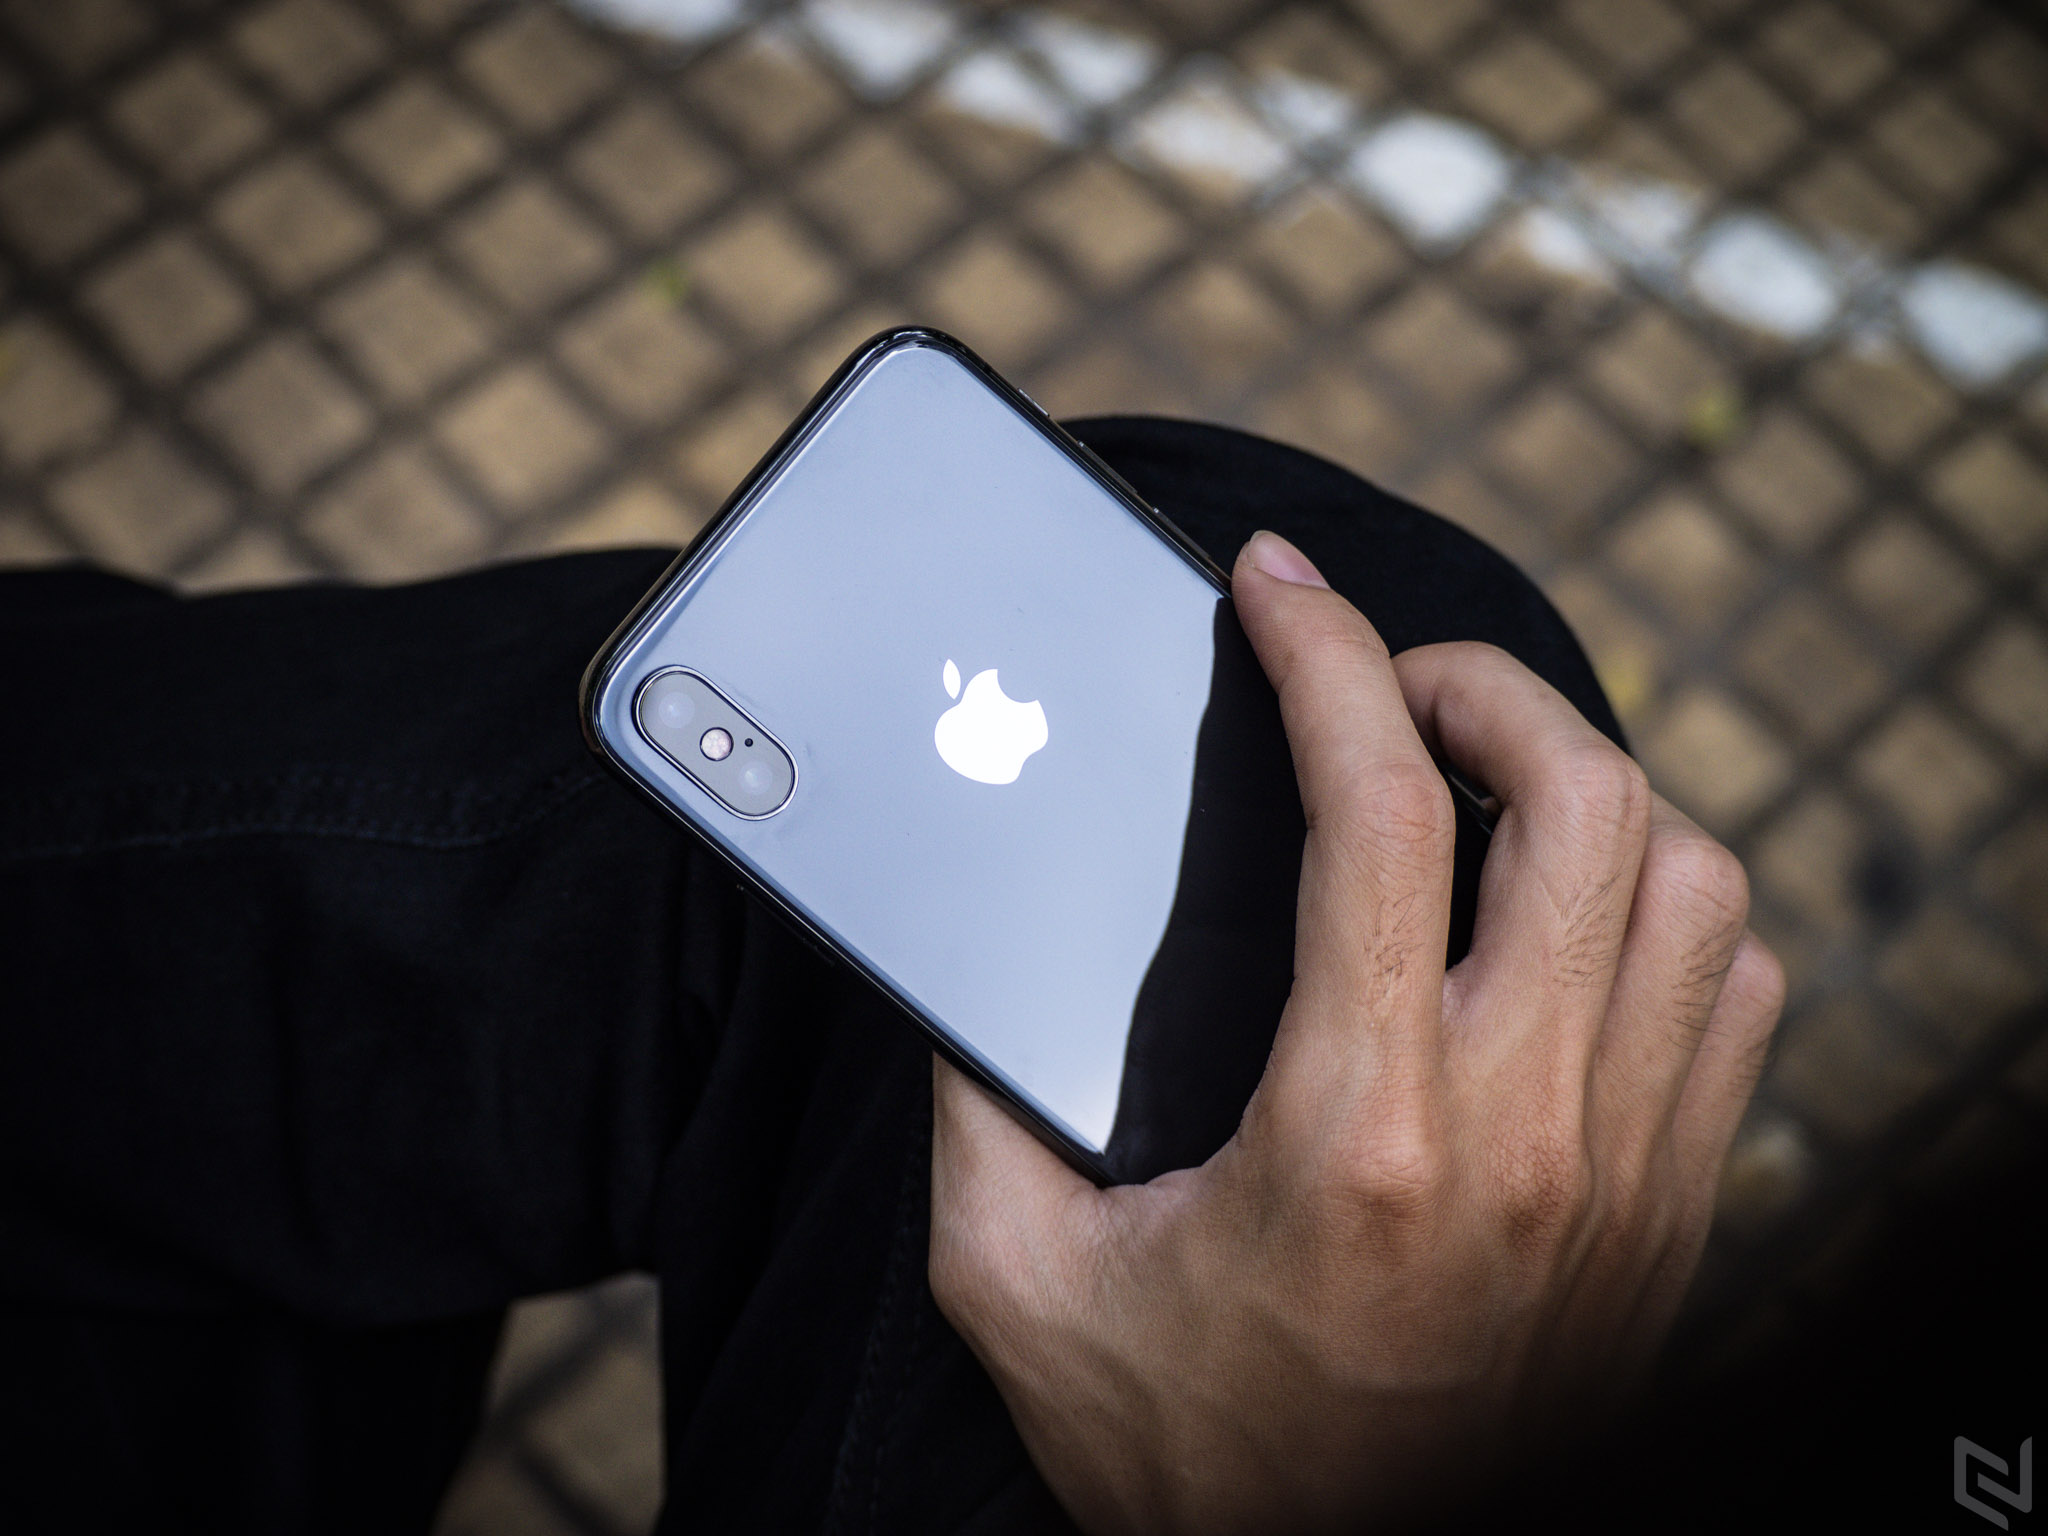 iPhone X hàng chính hãng FPT sẽ có giá từ 29,99 triệu đồng